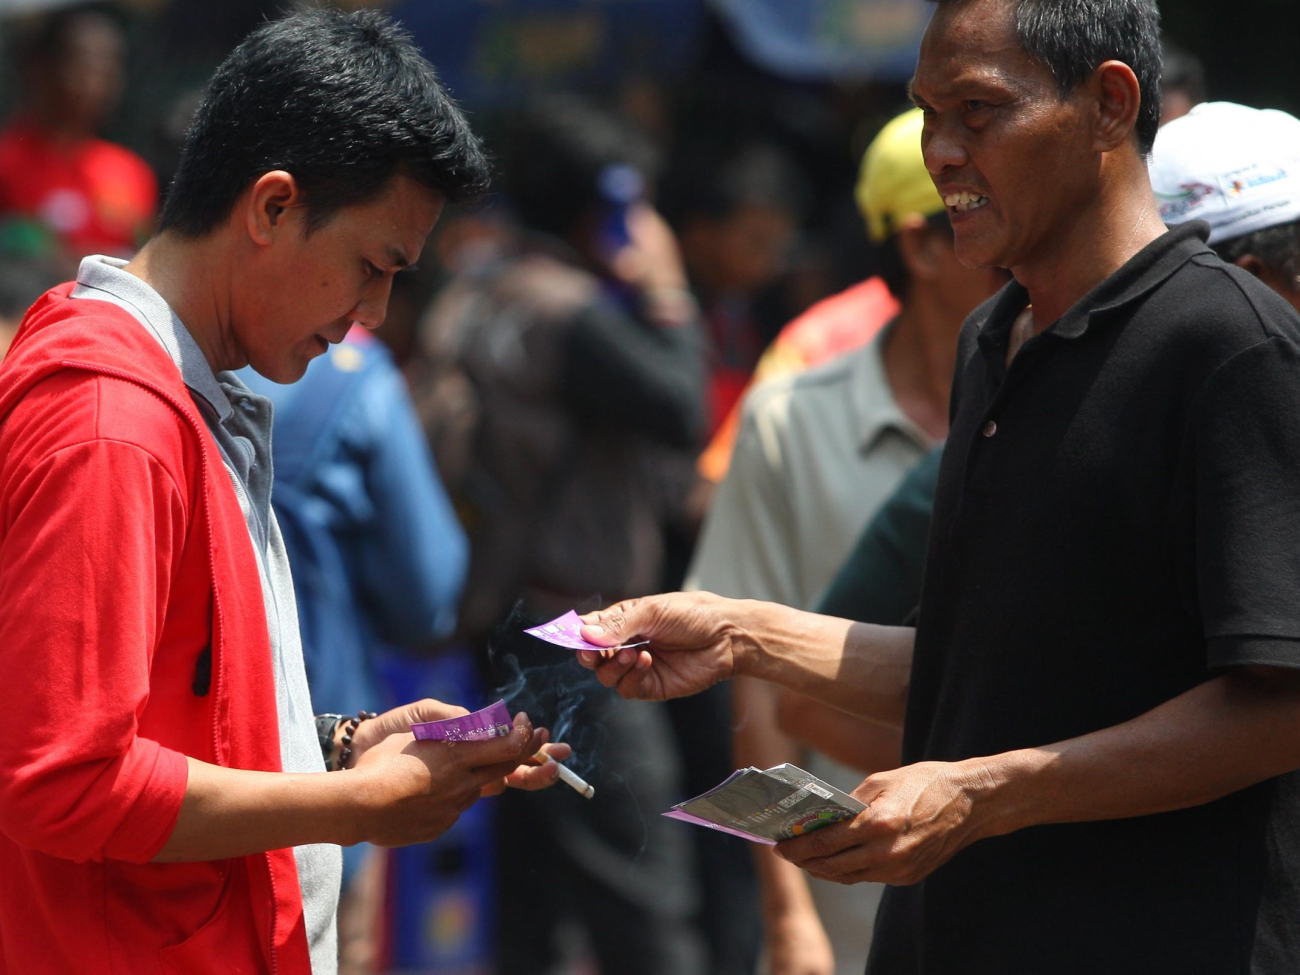 Calo menawarkan tiket kepada penonton yang akan menyaksikan pertandingan sepak bola antara Indonesia melawan Arab Saudi di Gelora Bung Karno, Jakarta, Sabtu (23/3). Antusiasme para penggemar Timnas Indonesia untuk menyaksikan pertandingan di manfaatkan para calo untuk menjual tiket  membeli tiket pertandingan Indonesia lawan Arab Saudi. Para penggemar yang tidak mendapatkan tiket ataupun malas antre rela membeli tiket kepada calo dengan harga dua kali lipat penjualan normal MI/RAMDANI